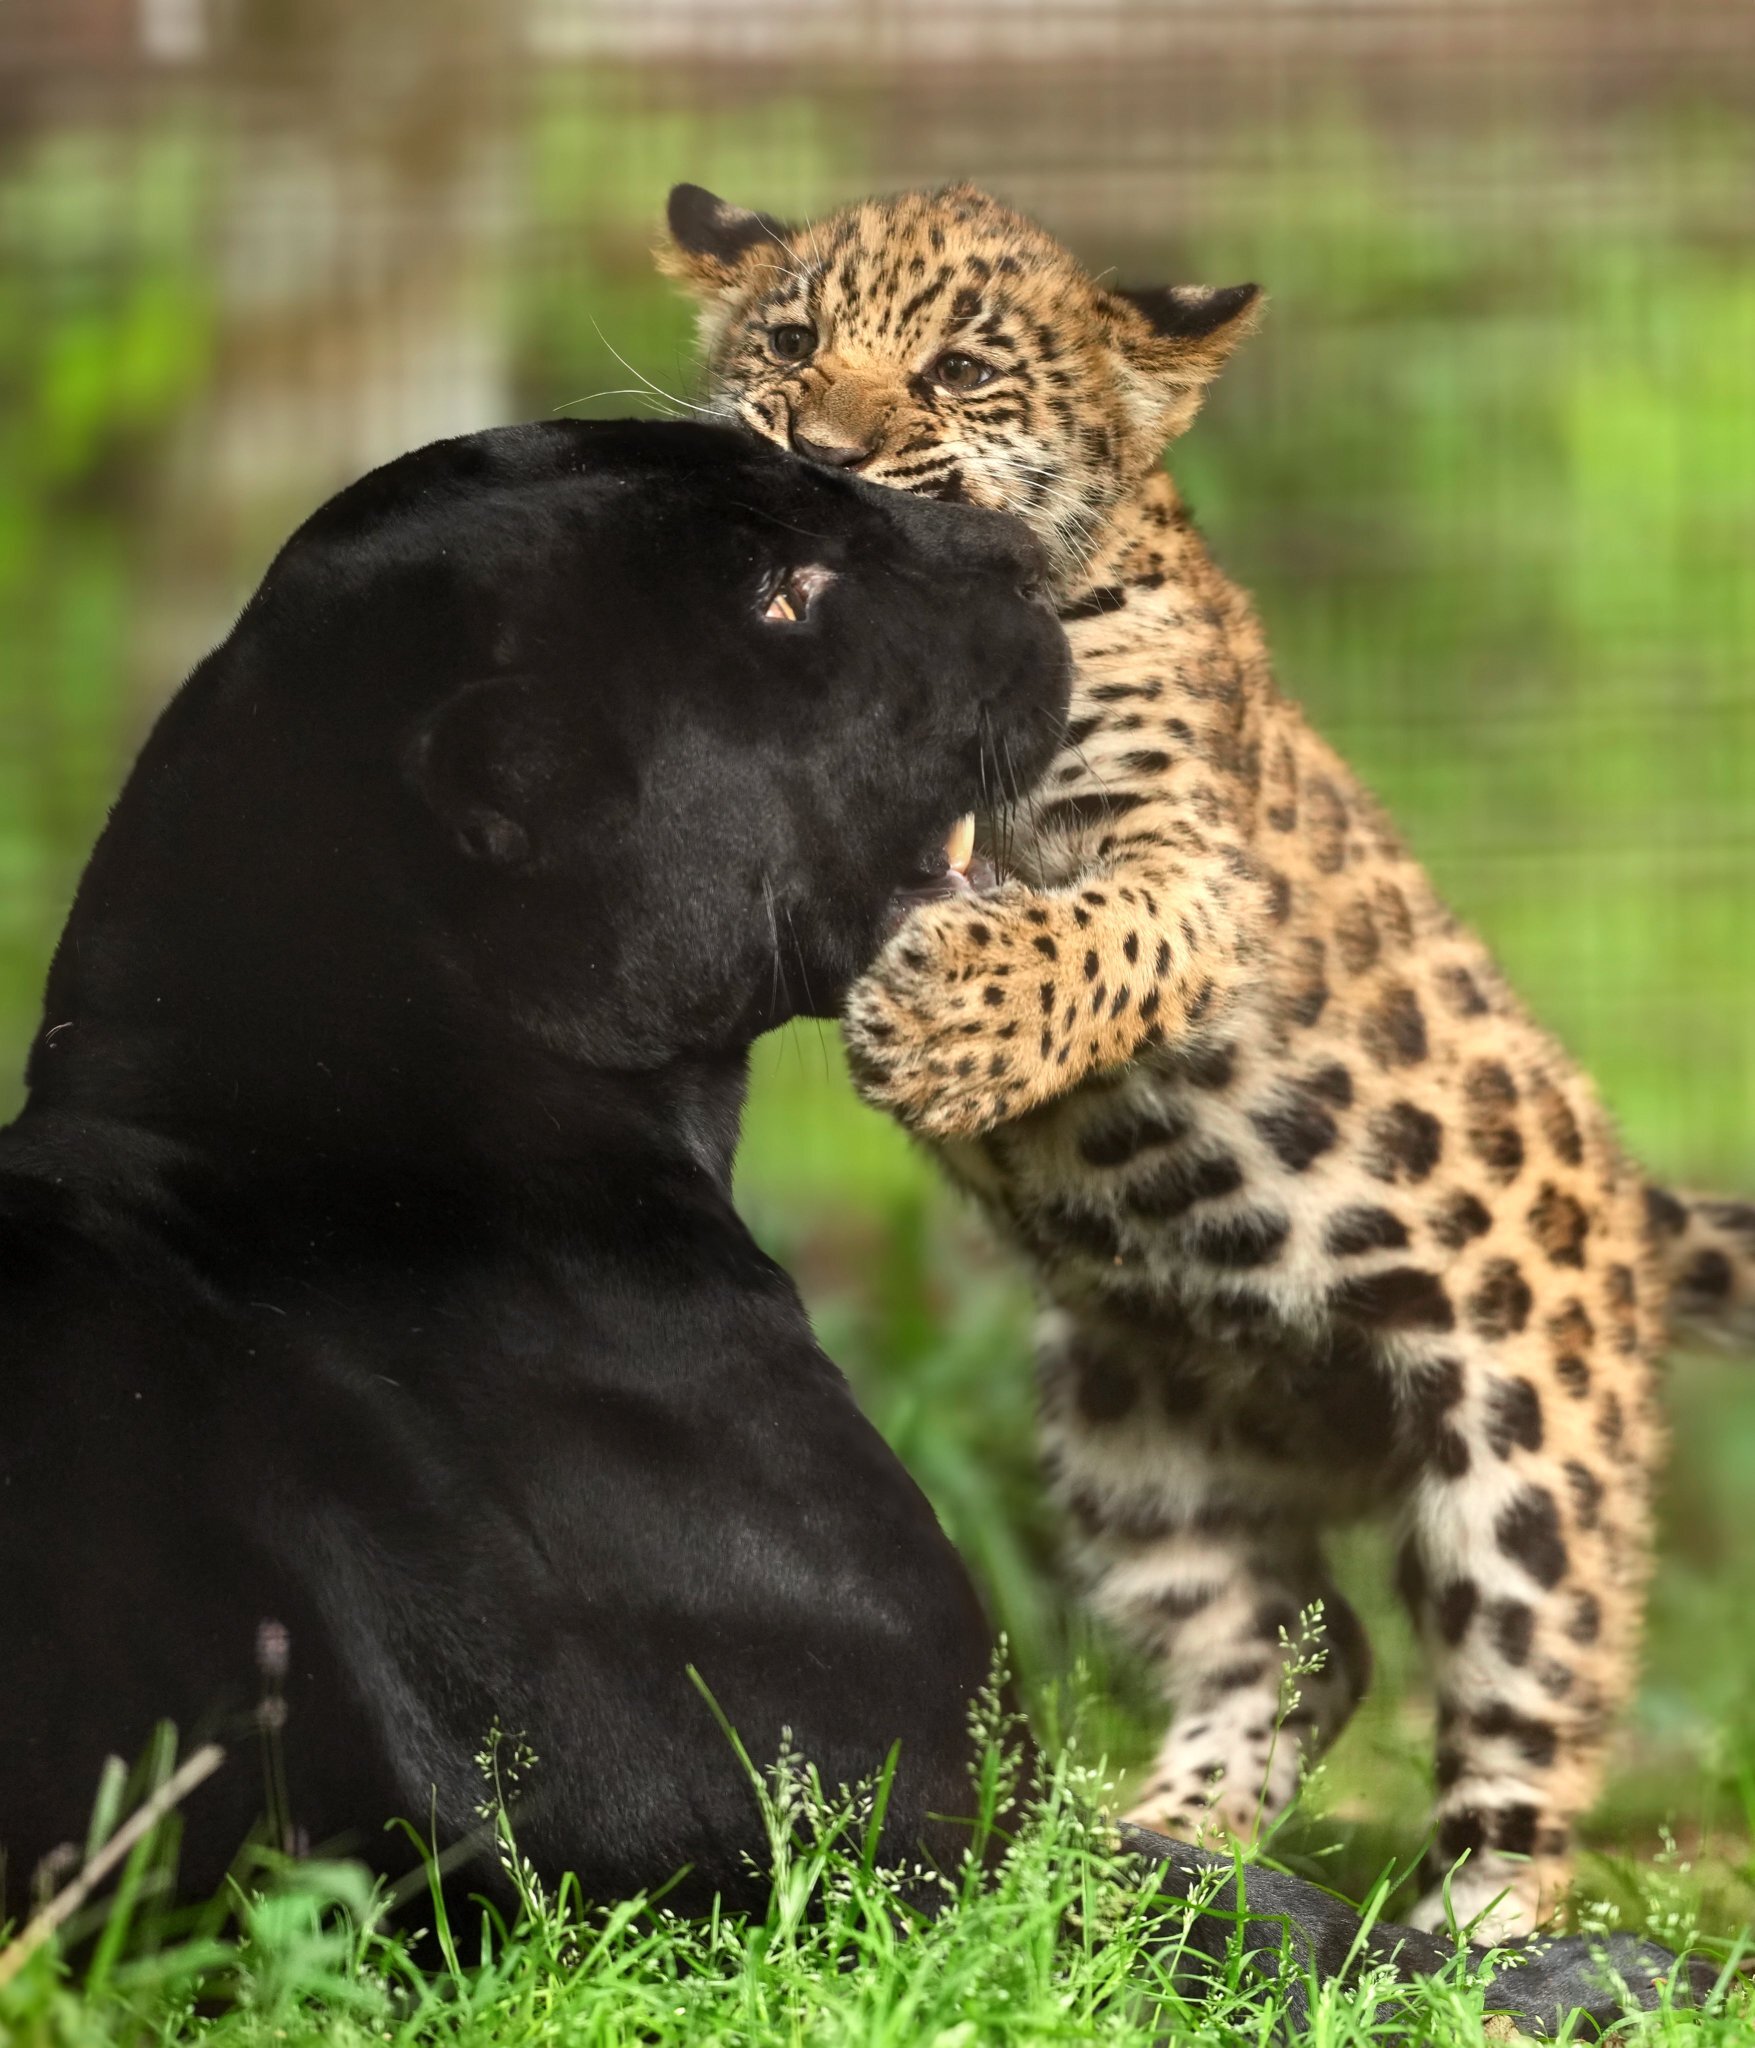 Mamakus :3 - Wild animals, Zoo, Predatory animals, Cat family, Jaguar, Black Panther, Young, Big cats, Kus